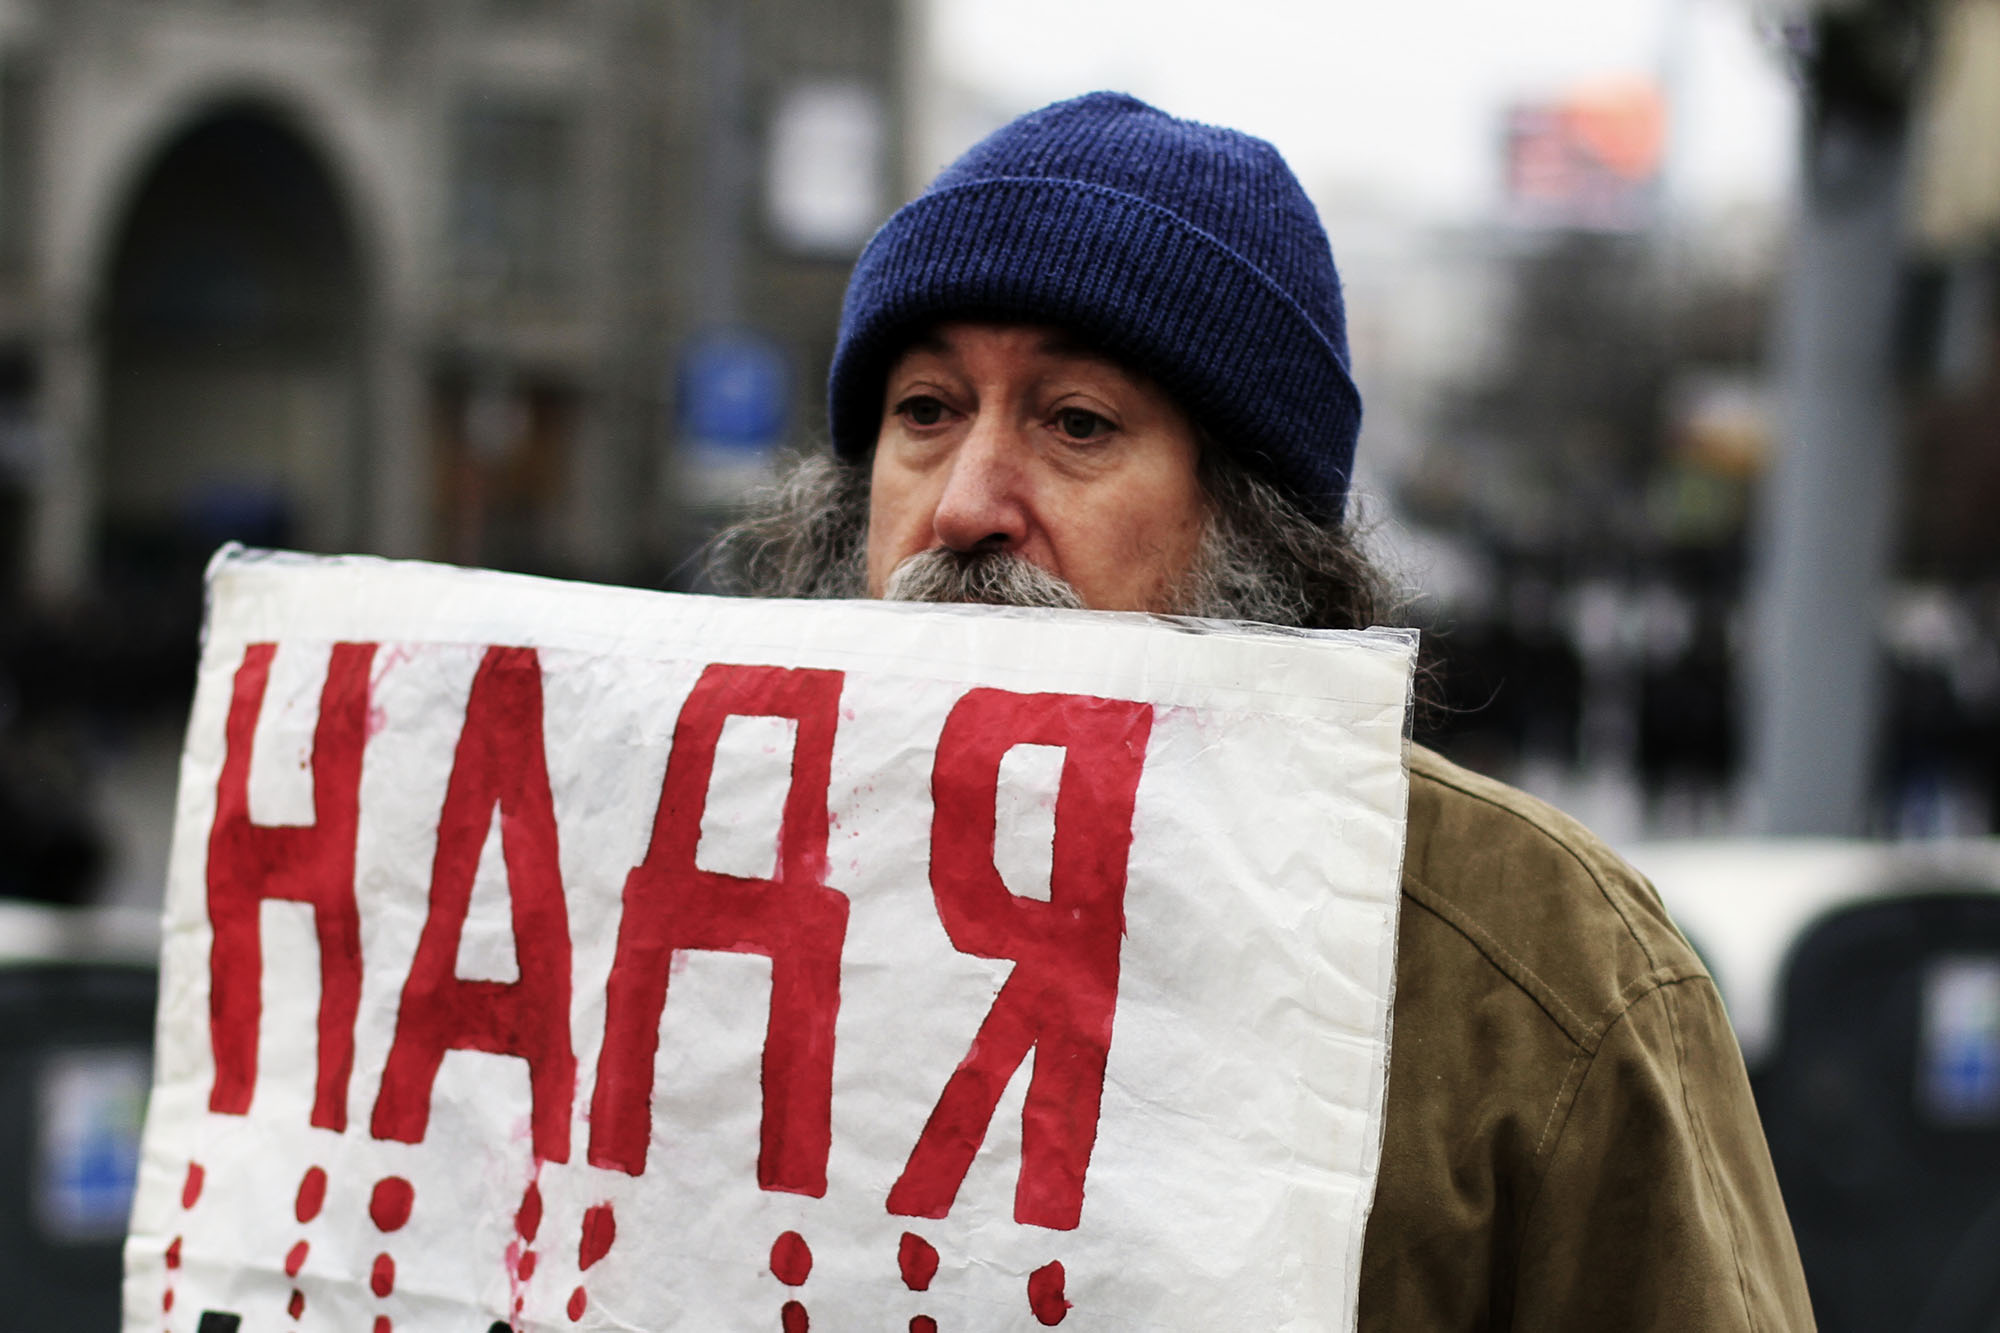 За дружинниками пришли чудаки. Одинокие грустные люди с плакатами в поддержку Надежды Савченко.